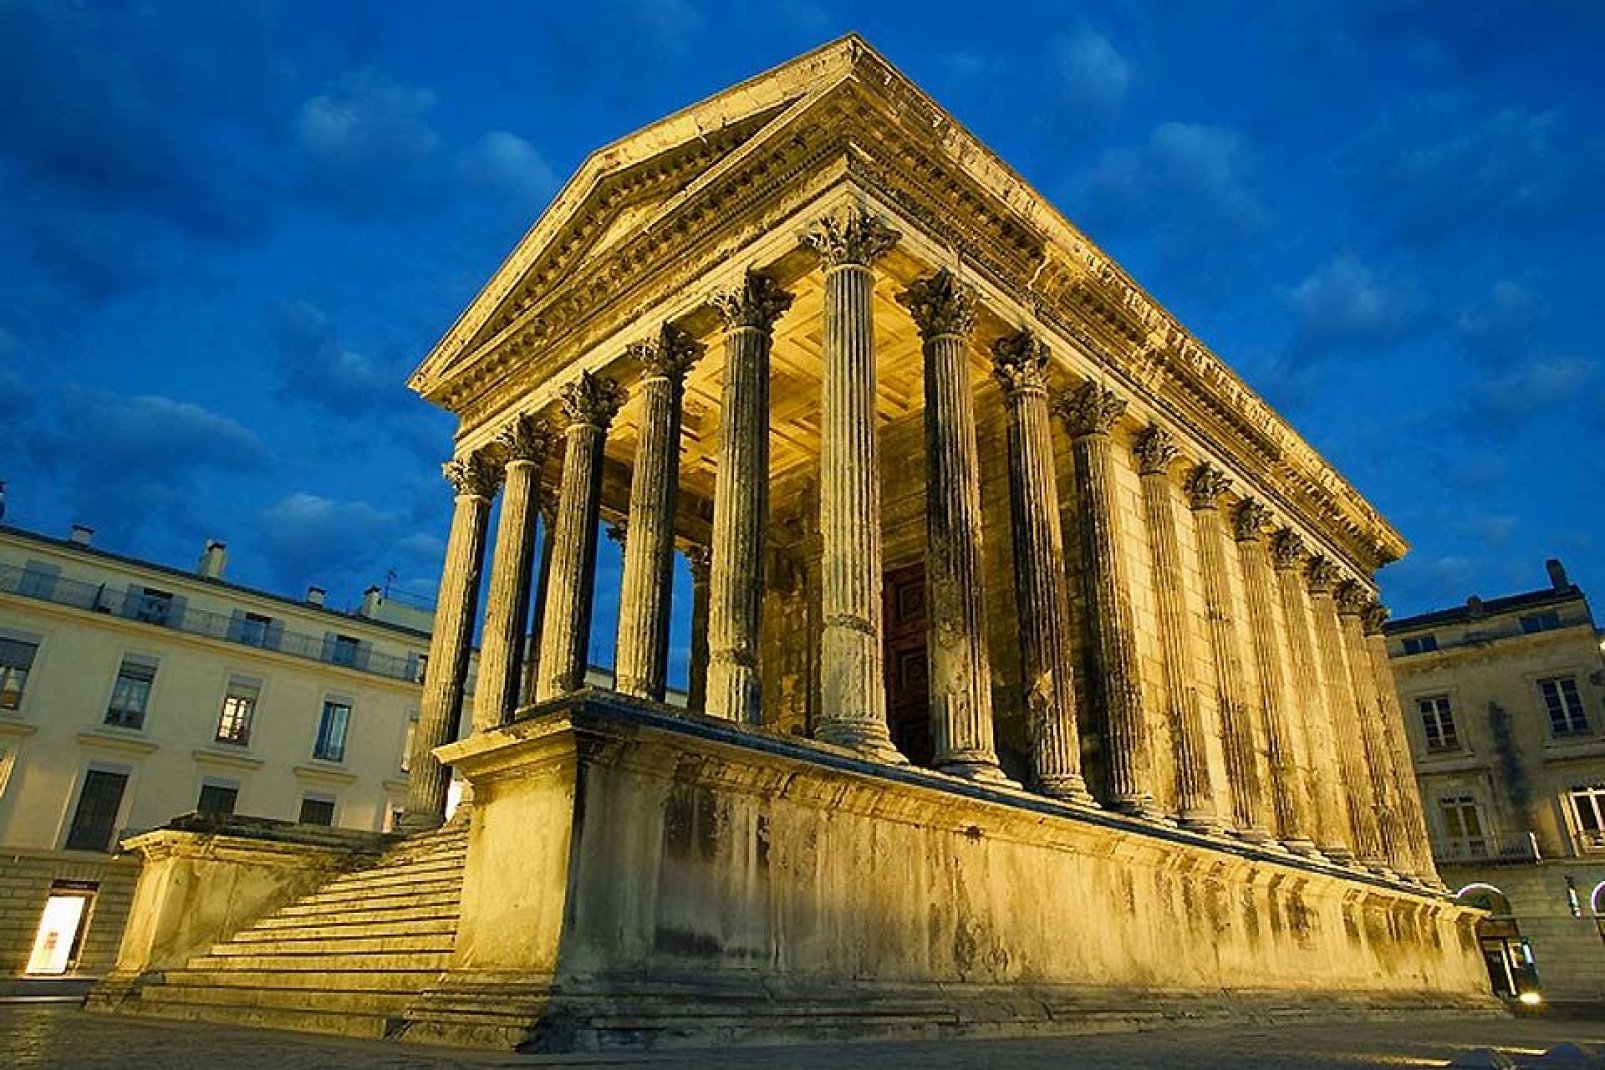 La Maison Carrée è l'unico tempio romano al mondo interamente conservato. Vi viene trasmesso il film 3D "Héros de Nîmes" (Eroi di Nîmes) per la durata di 20 min, su maxischermo.